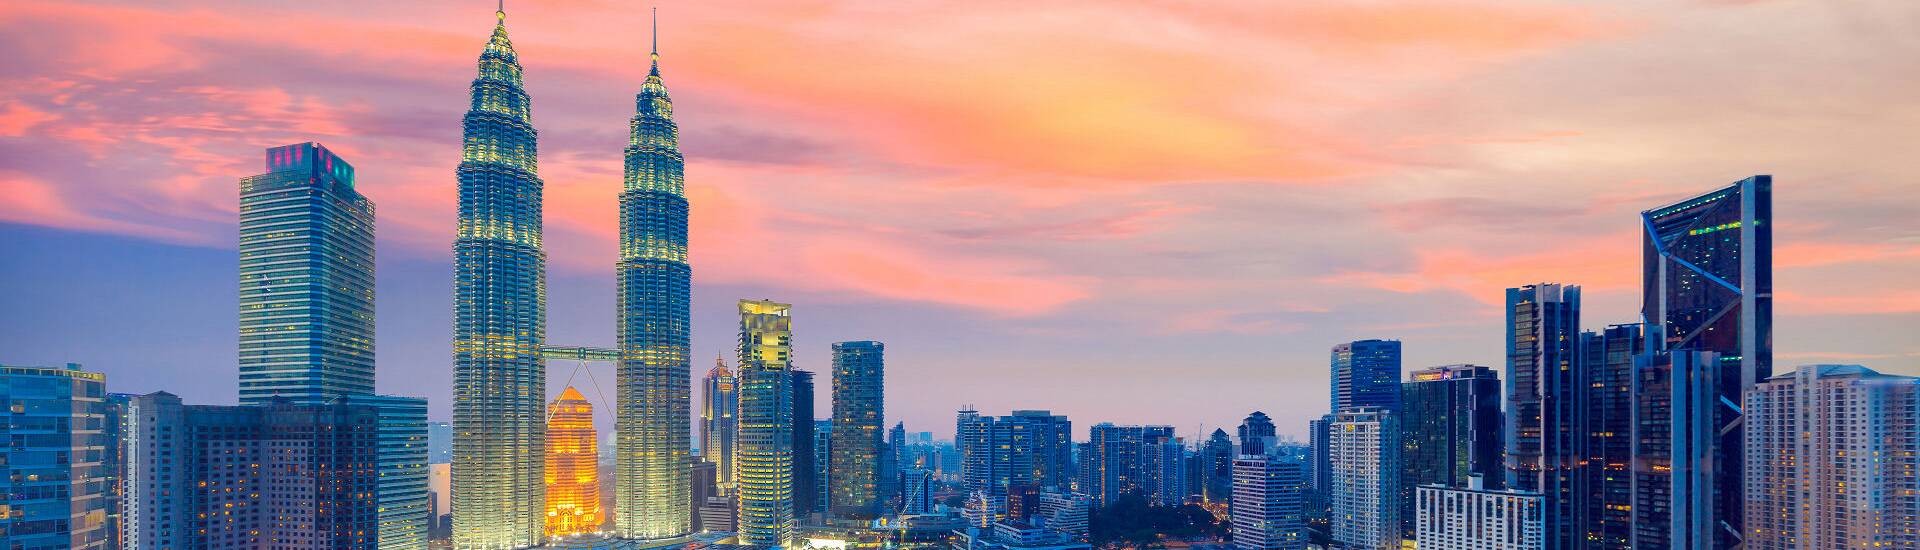 Kuala Lumpurs beeindruckender Skyline, die die beste Reisezeit für Malaysia symbolisiert